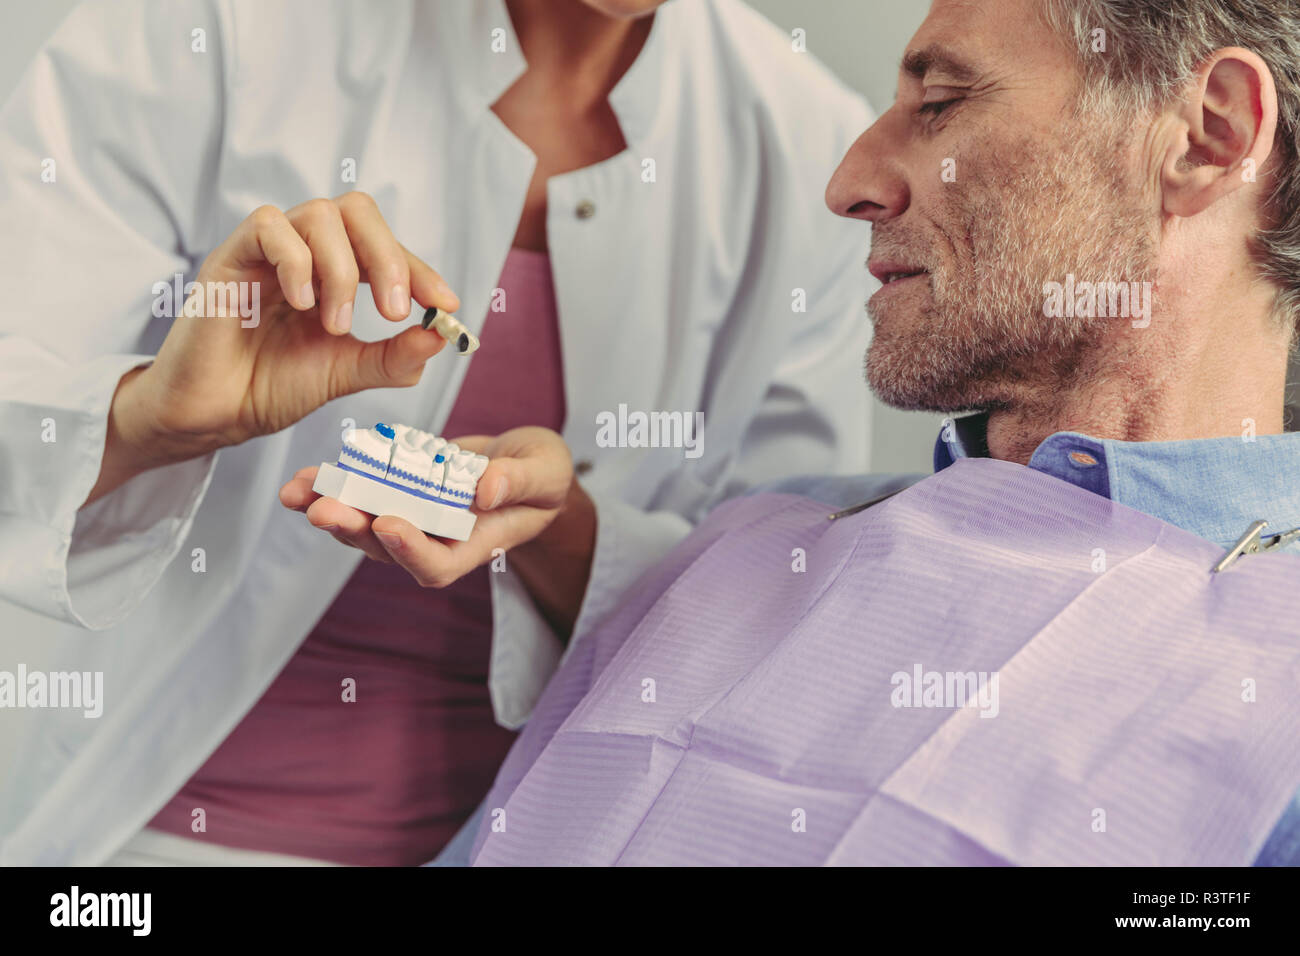 Puente dental dentista explicando en un modelo del diente al paciente Foto de stock